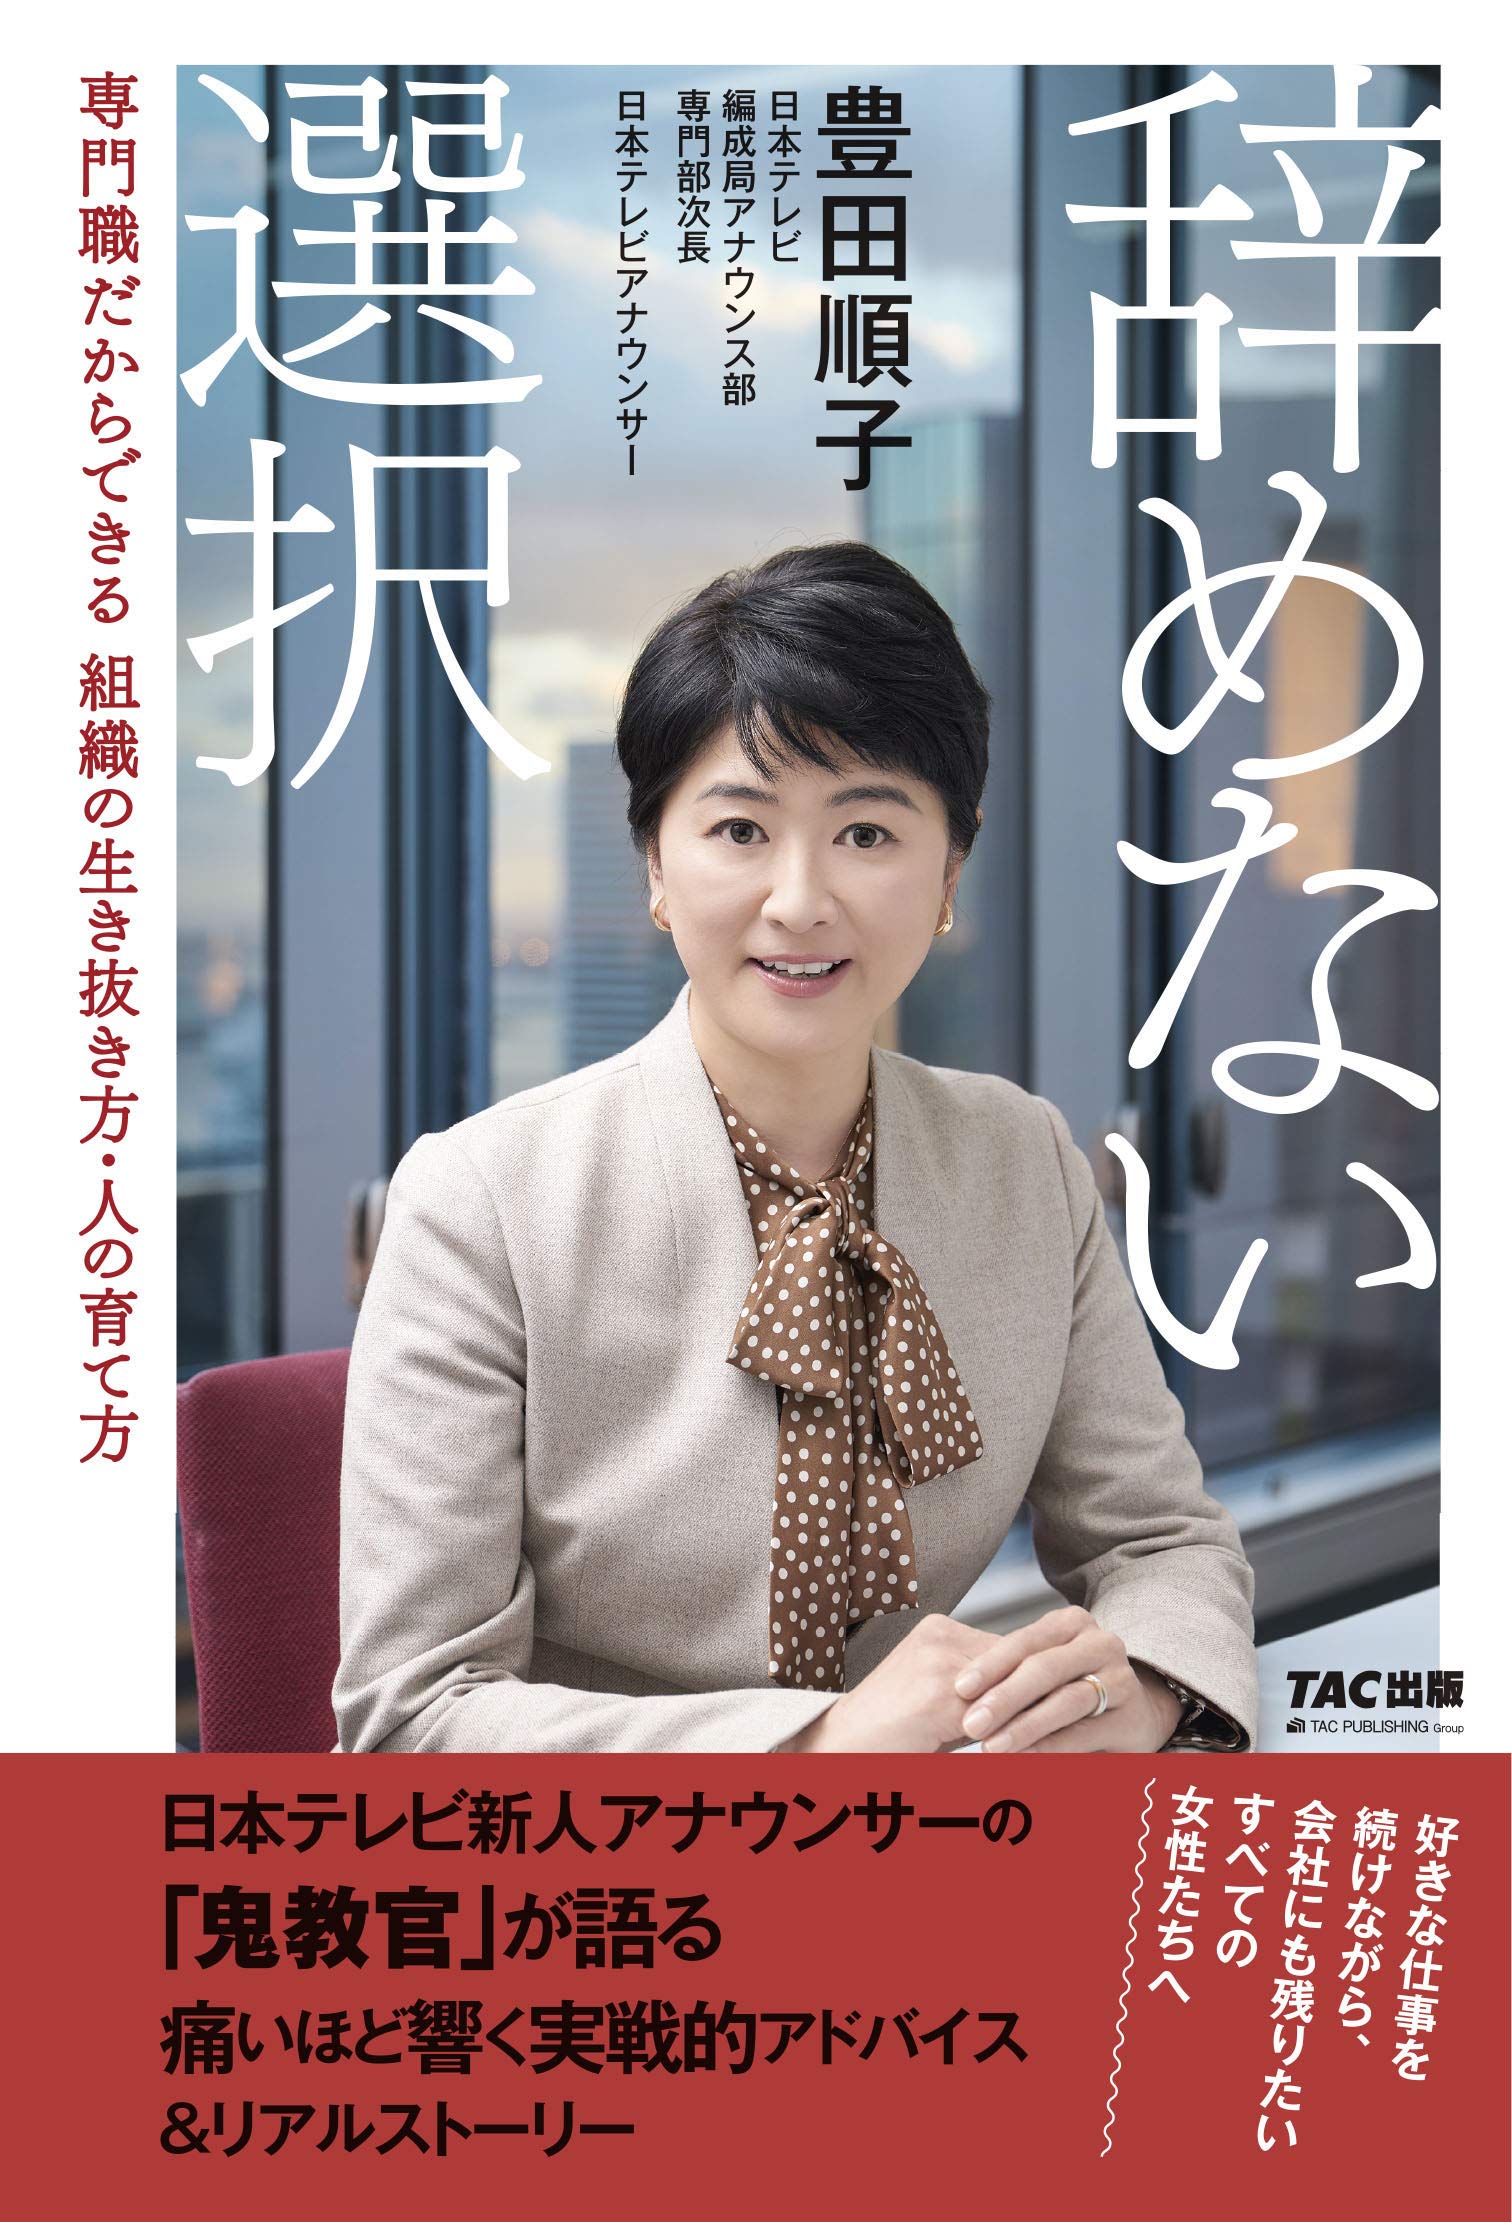 【日テレ女性アナ】報道向きだと思う「日本テレビの女性アナウンサー」は誰？【2022年人気投票実施中】 | ねとらぼ調査隊